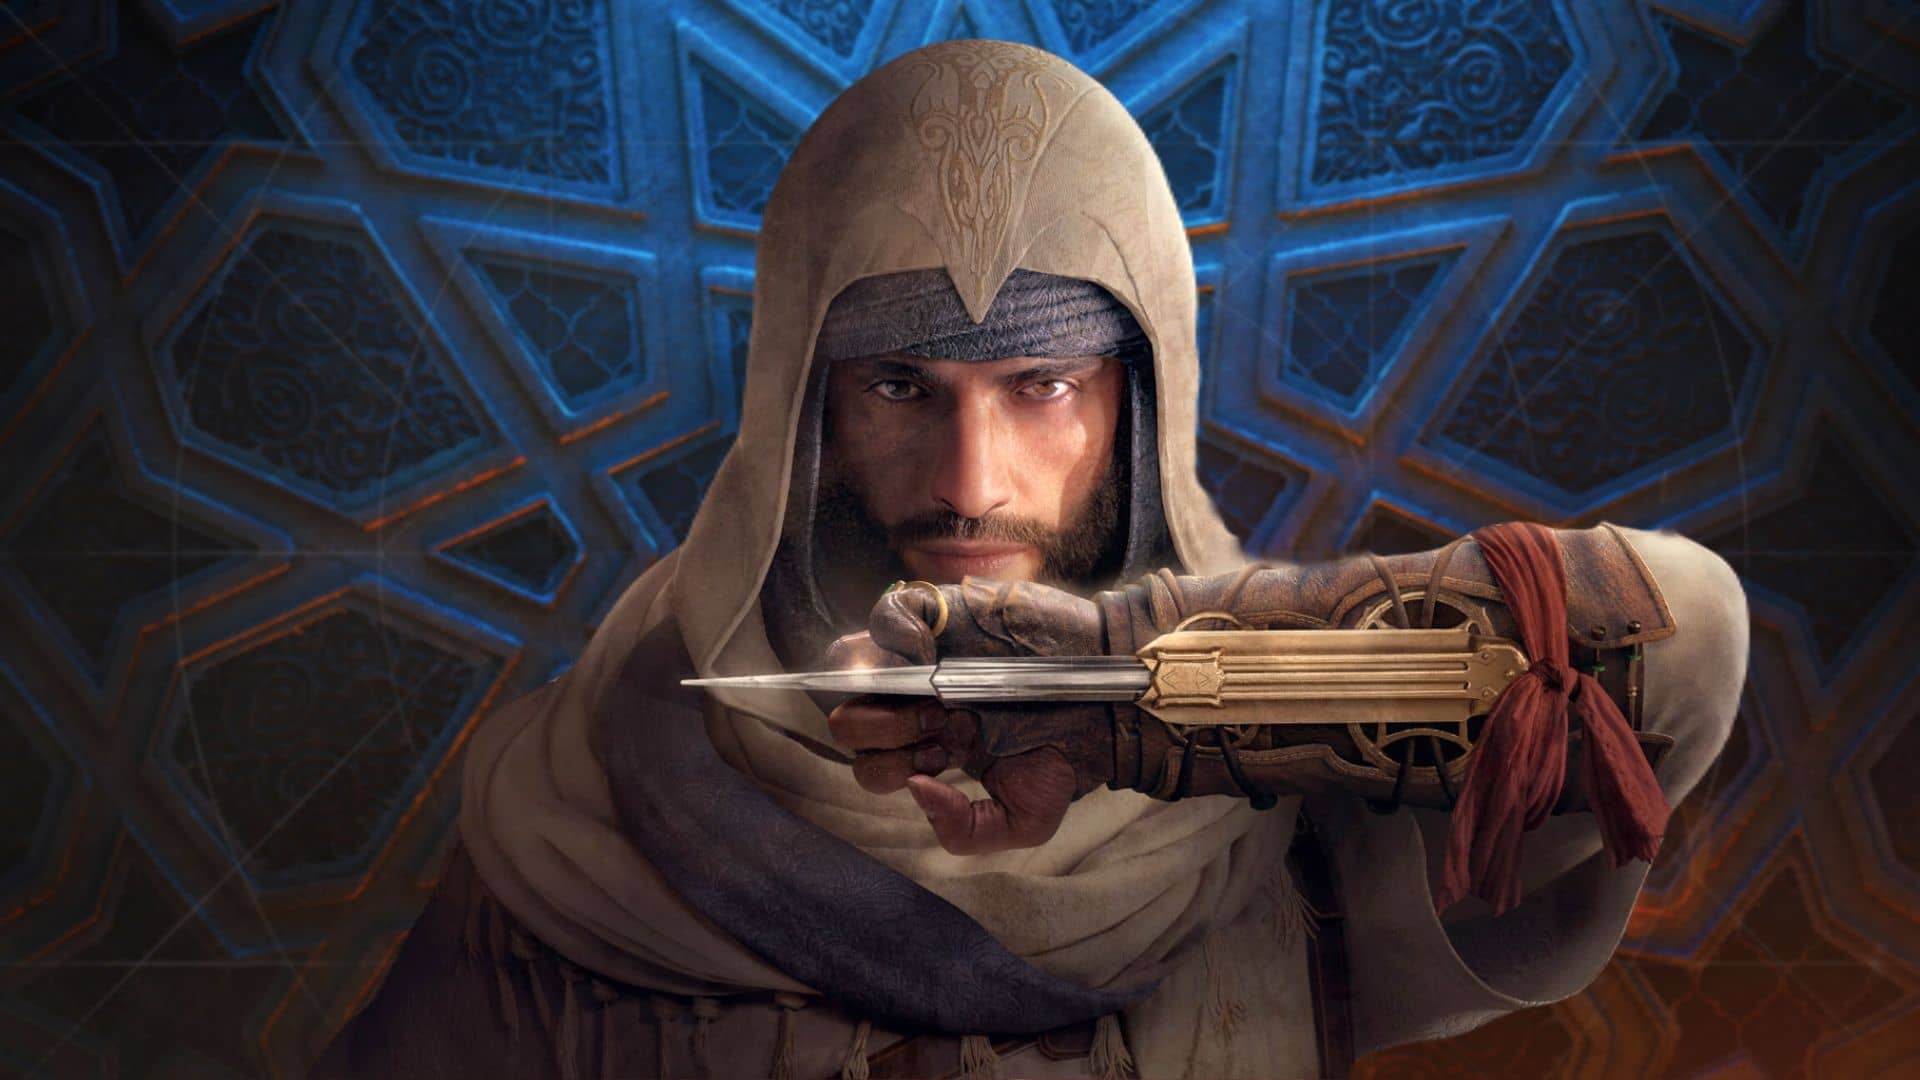 نقد بازی اساسینز کرید میراژ (Assassin's Creed Mirage)